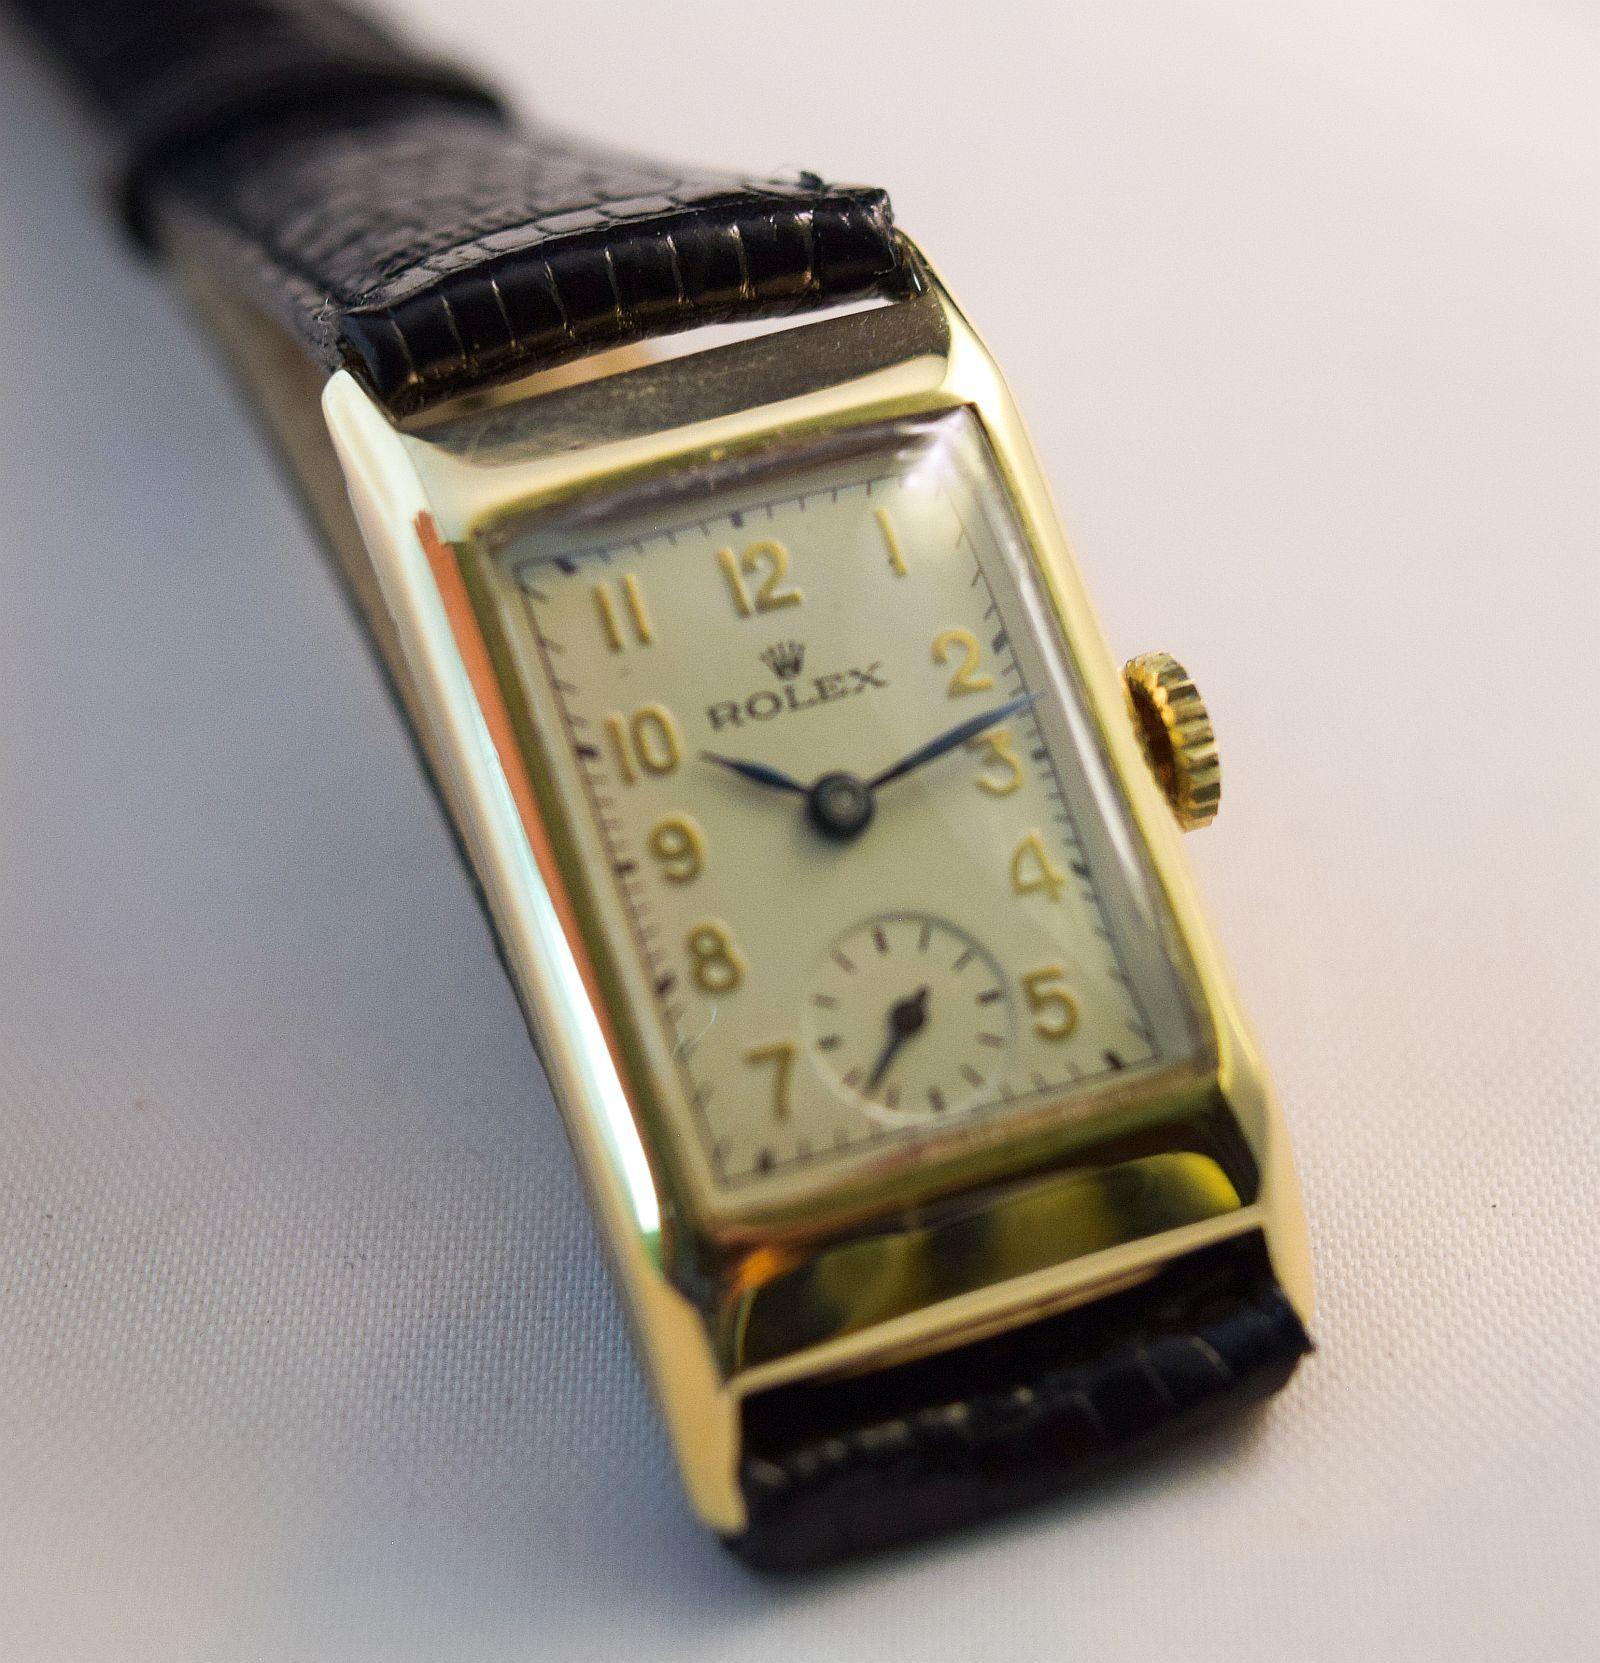 Rolex Ref 2356 CIRCA 1930
Rolex Vintage Rectangular Gehäuse aus massivem Gold mit massivem Draht Gold fixiert Nasen.
Diese attraktive Uhr hat einen manuellen Handaufzug.
In ausgezeichnetem Zustand wurde sie kürzlich von kompetenten Restauratoren und